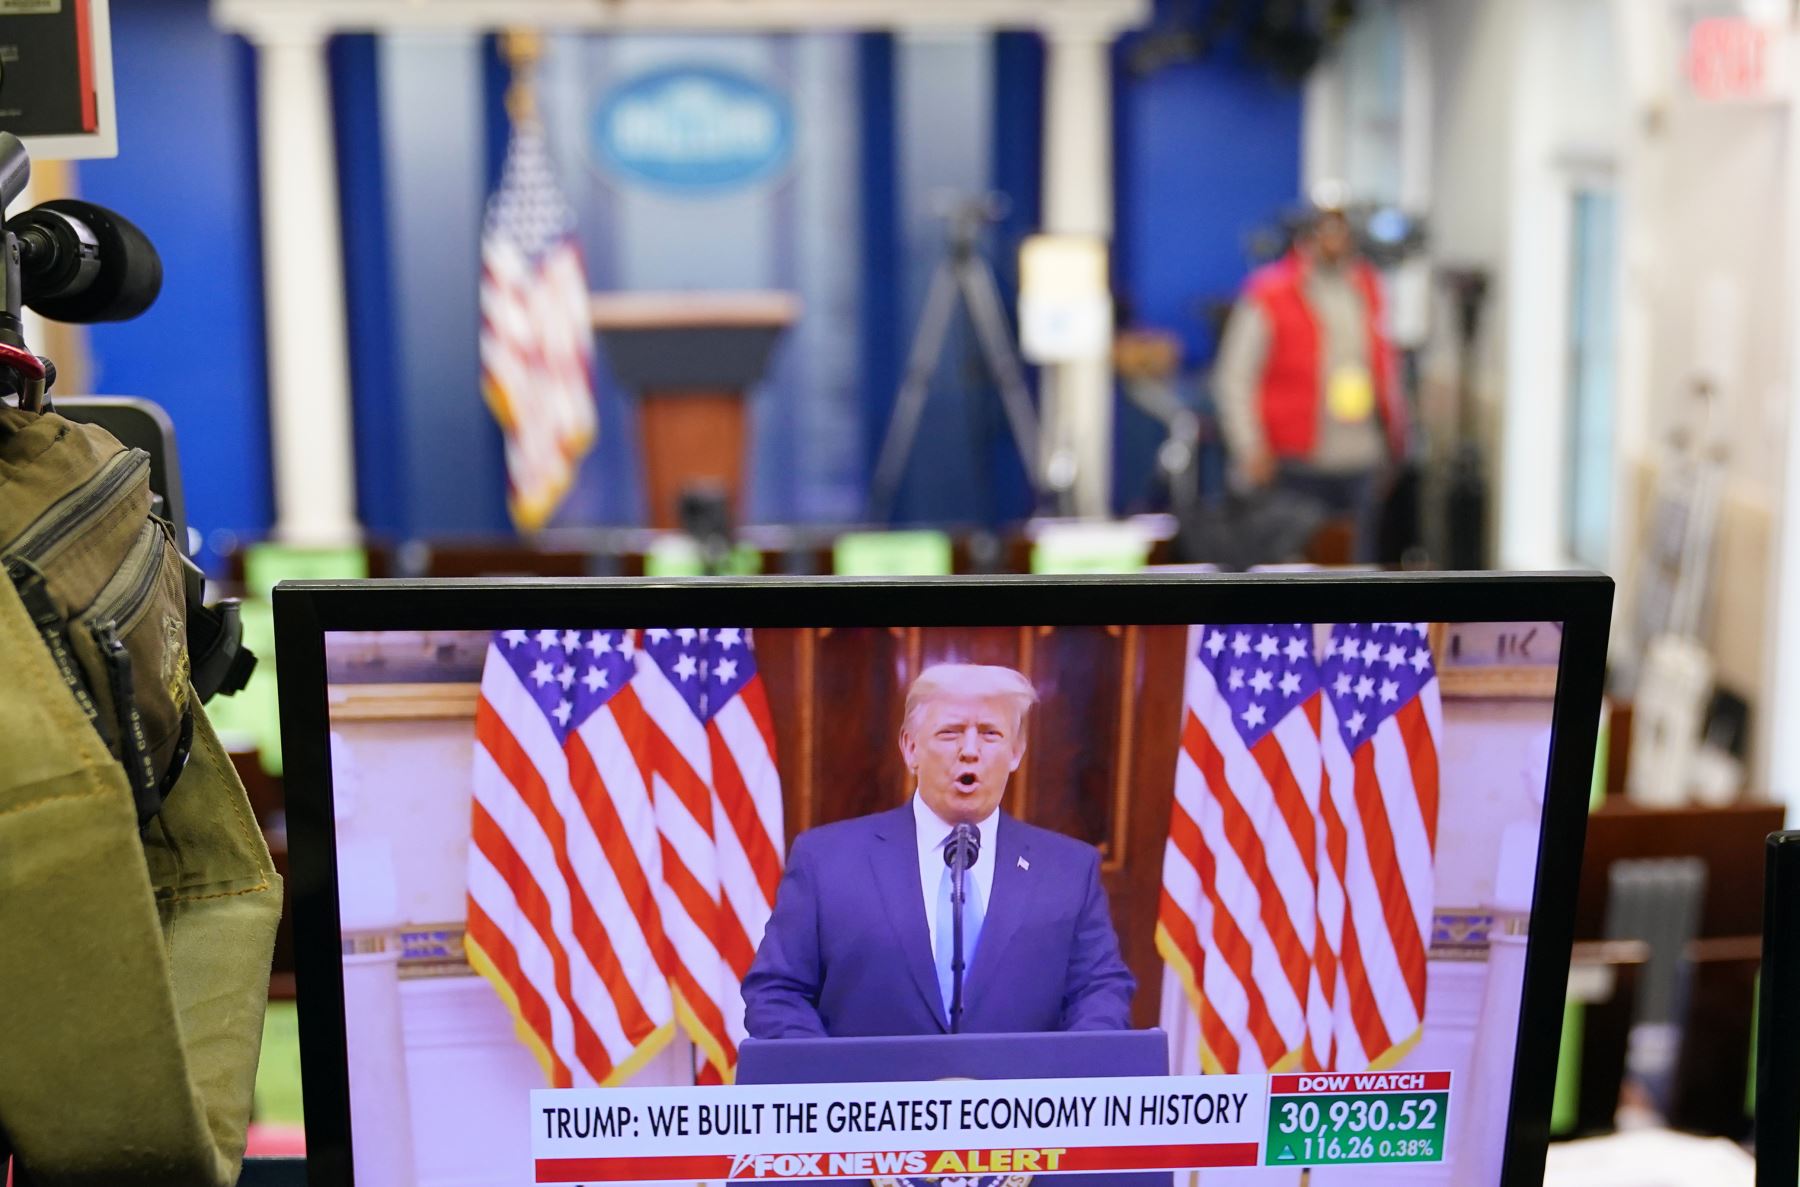 Una imagen del presidente de los Estados Unidos, Donald Trump, hablando en un video publicado en YouTube, se ve en un monitor en la Sala Brady Briefing de la Casa Blanca en Washington. El día de ayer, el presidente Donald Trump pronunció su discurso de despedida a la nación a través de un video publicado en YouTube. Foto: AFP